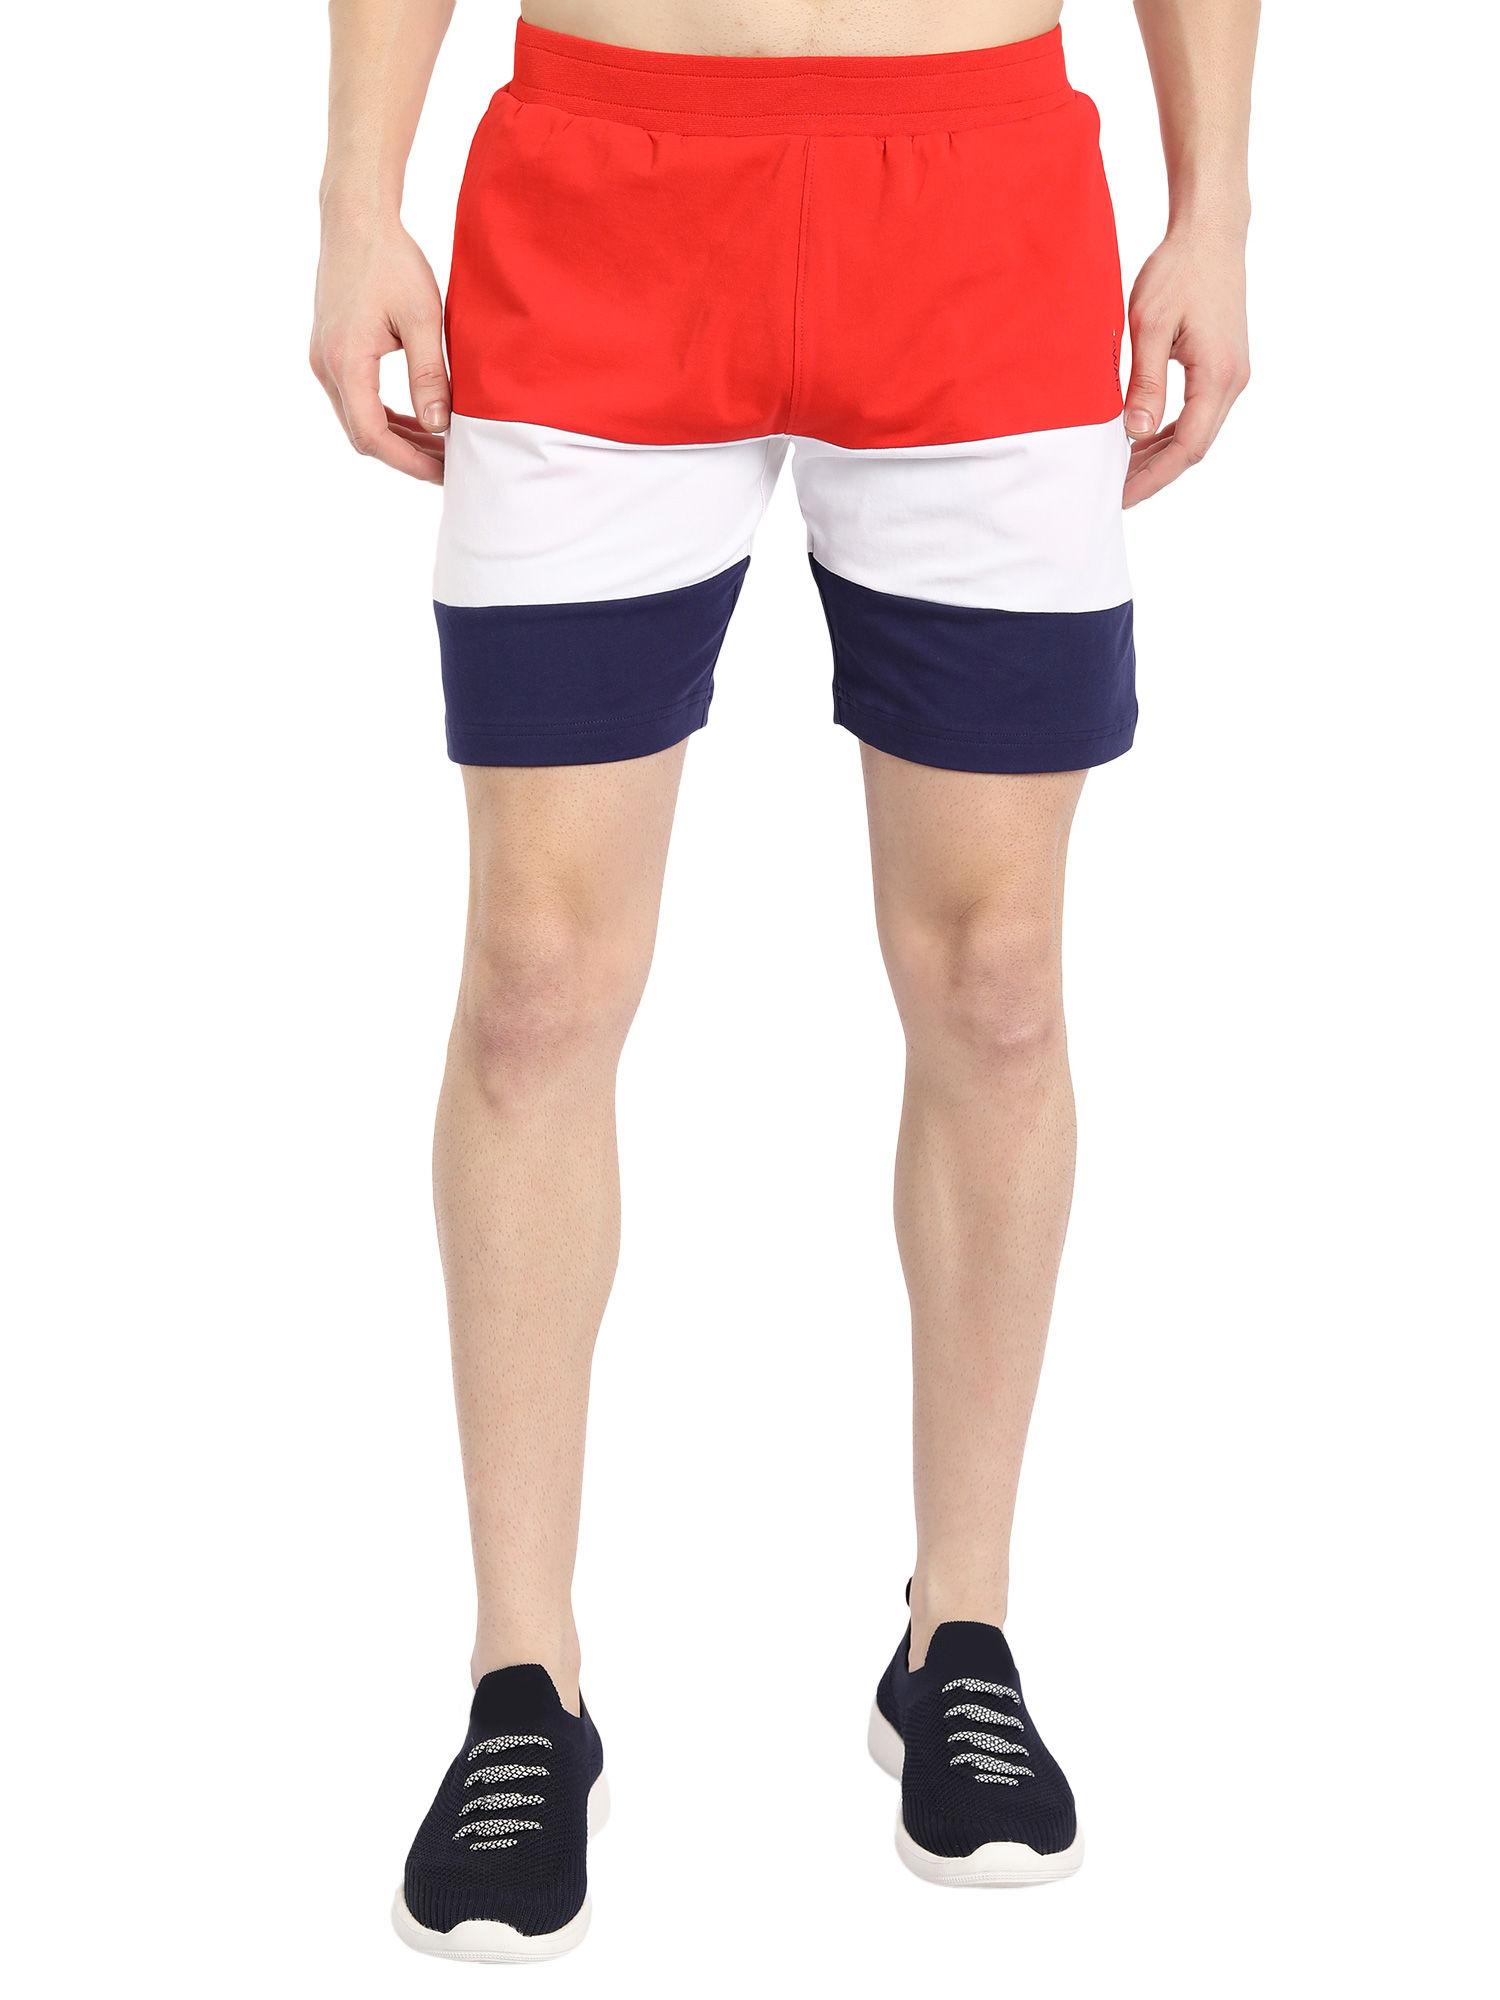 cotton rich lycra colorblock shorts in multicolor